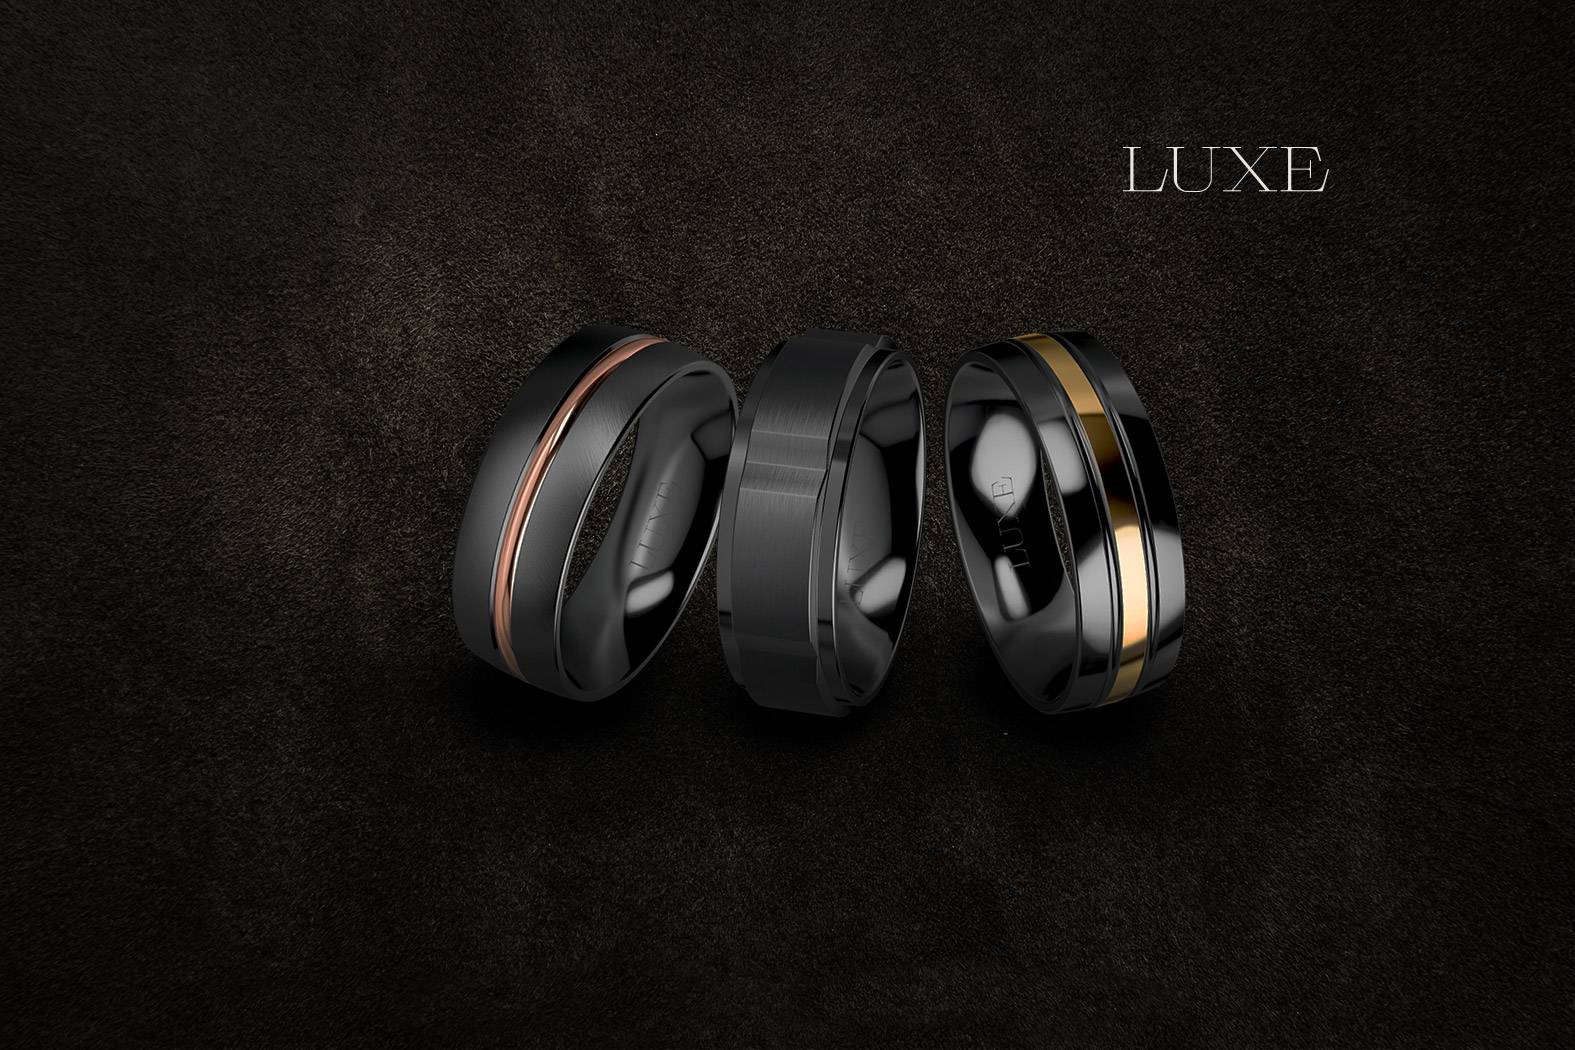 luze-zirconium ring - Luxe Wedding Rings